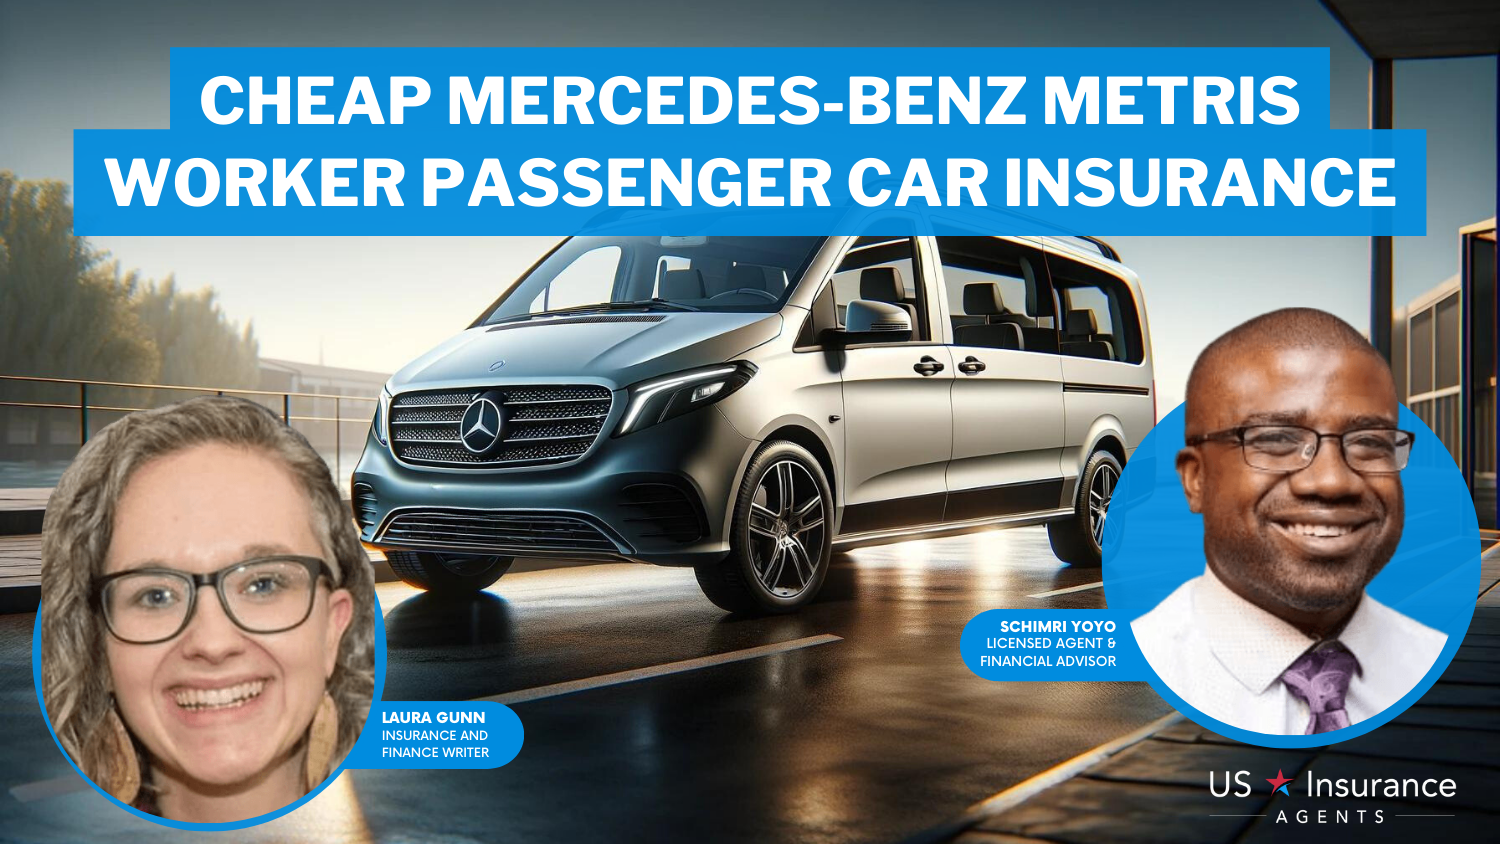 Cheap Mercedes-Benz Metris WORKER Passenger Car Insurance: State Farm, USAA, and Progressive